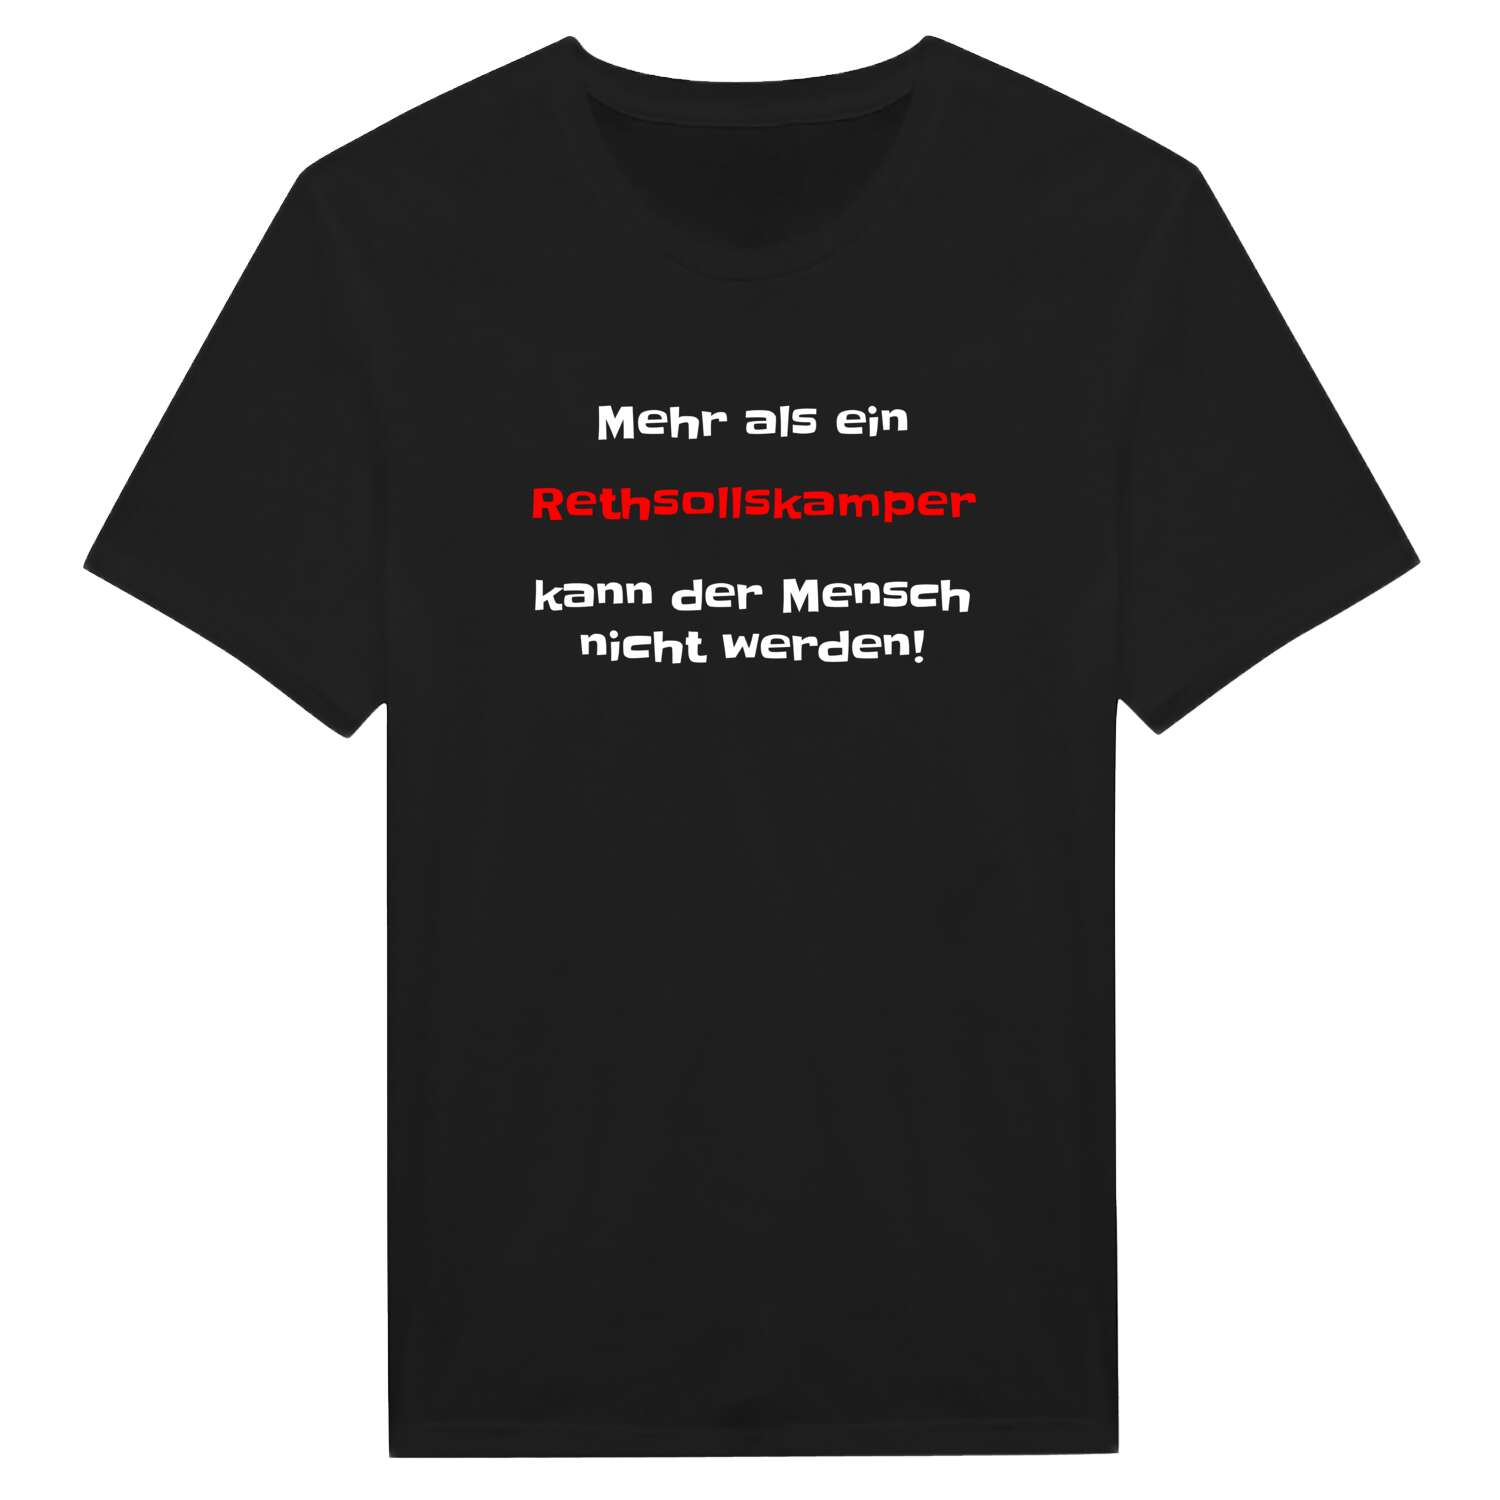 Rethsollskamp T-Shirt »Mehr als ein«